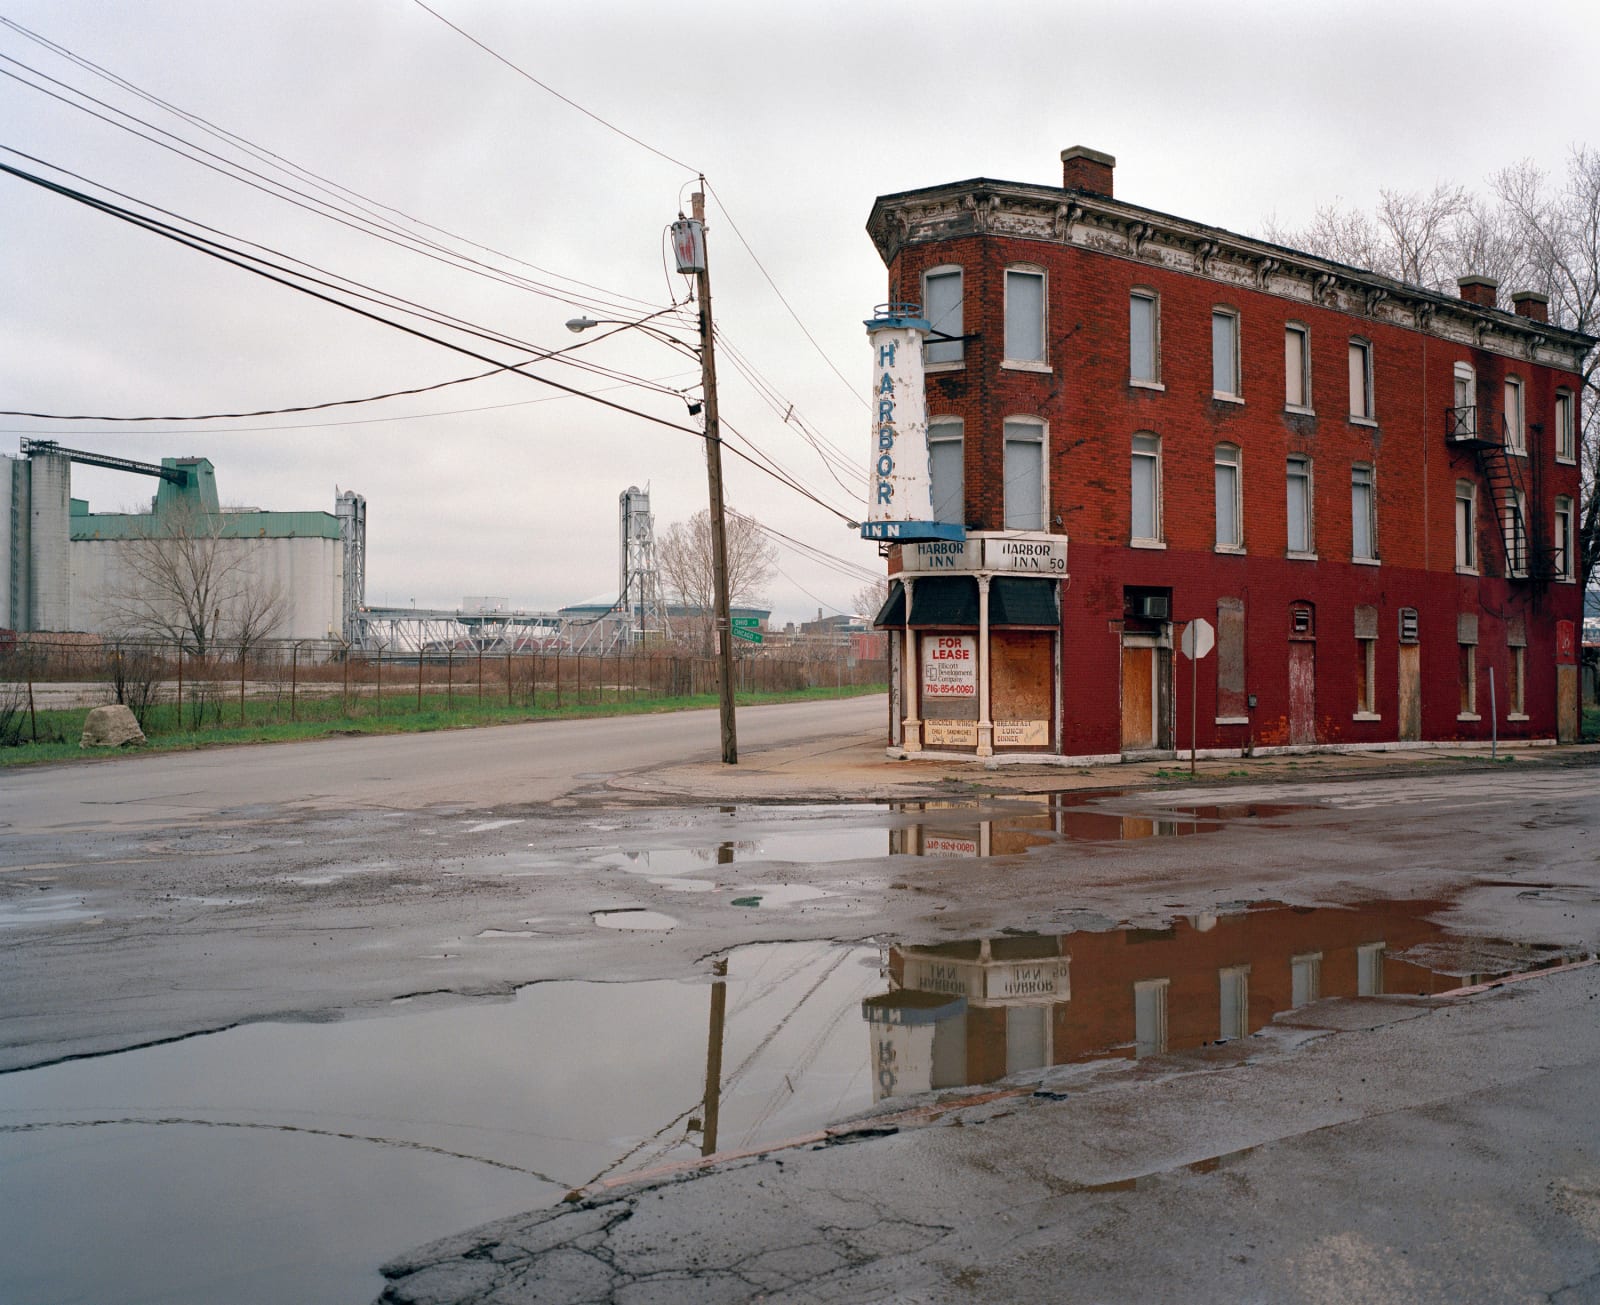 Jeff Brouws, Abandoned neighborhood bar on Ohio Street, Buffalo, New York, 2002